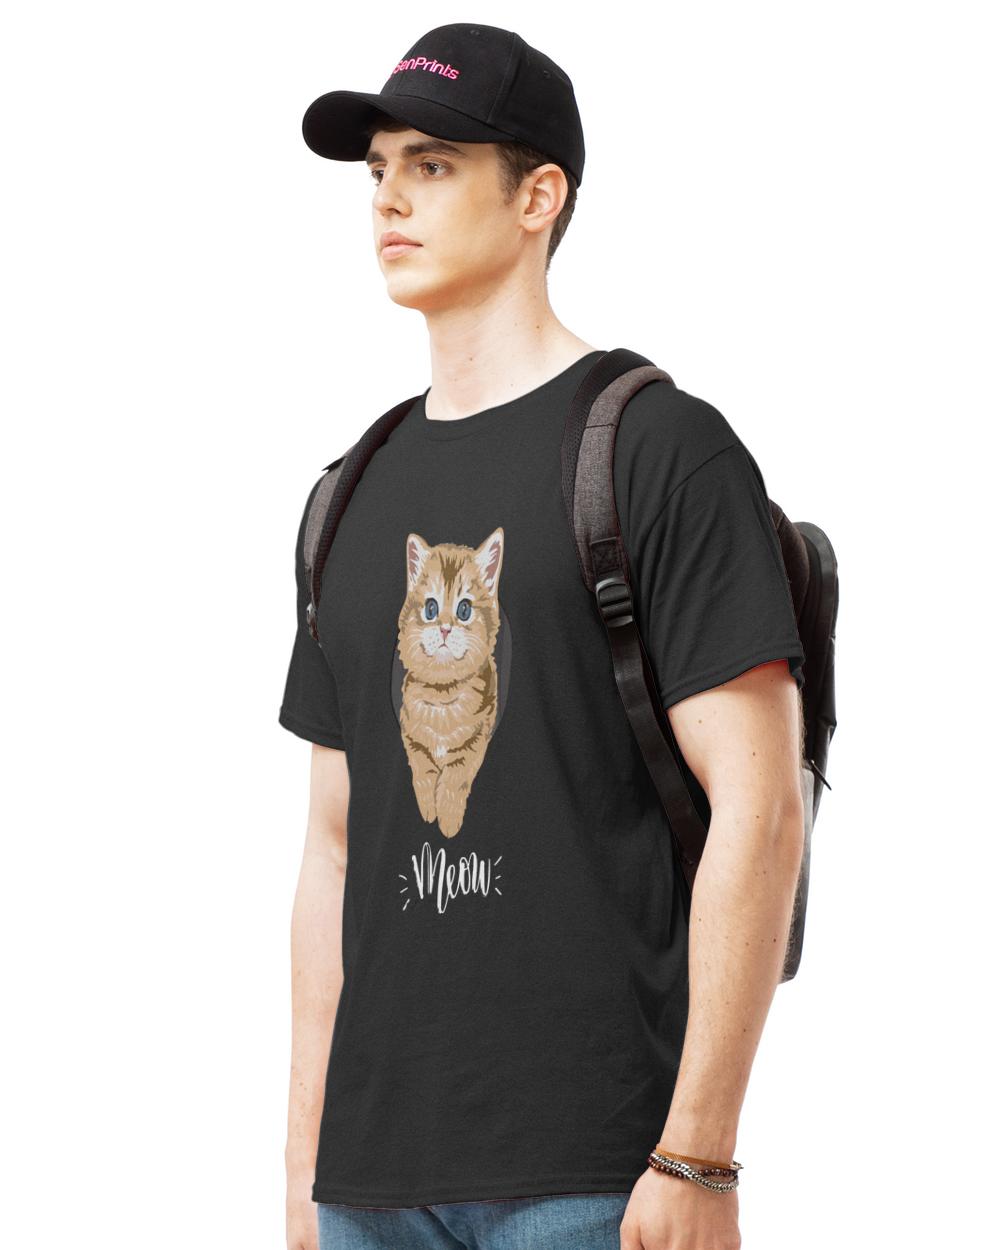 Kitten T- Shirt Meow Cute Kitten 1384